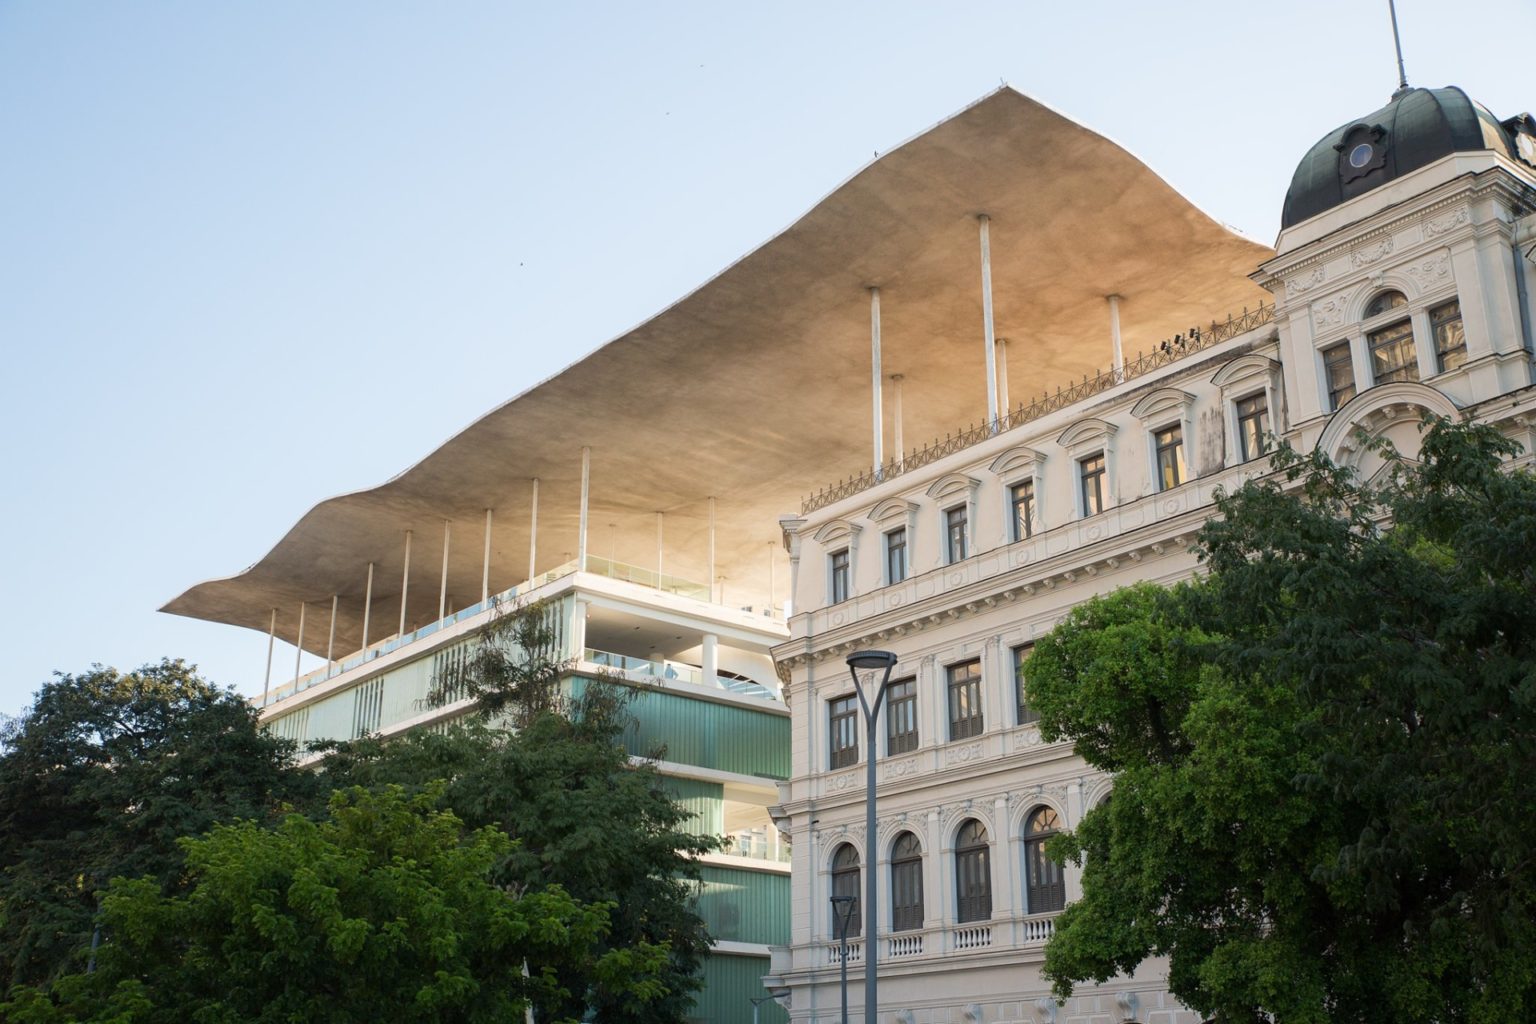 Museu de Arte do Rio